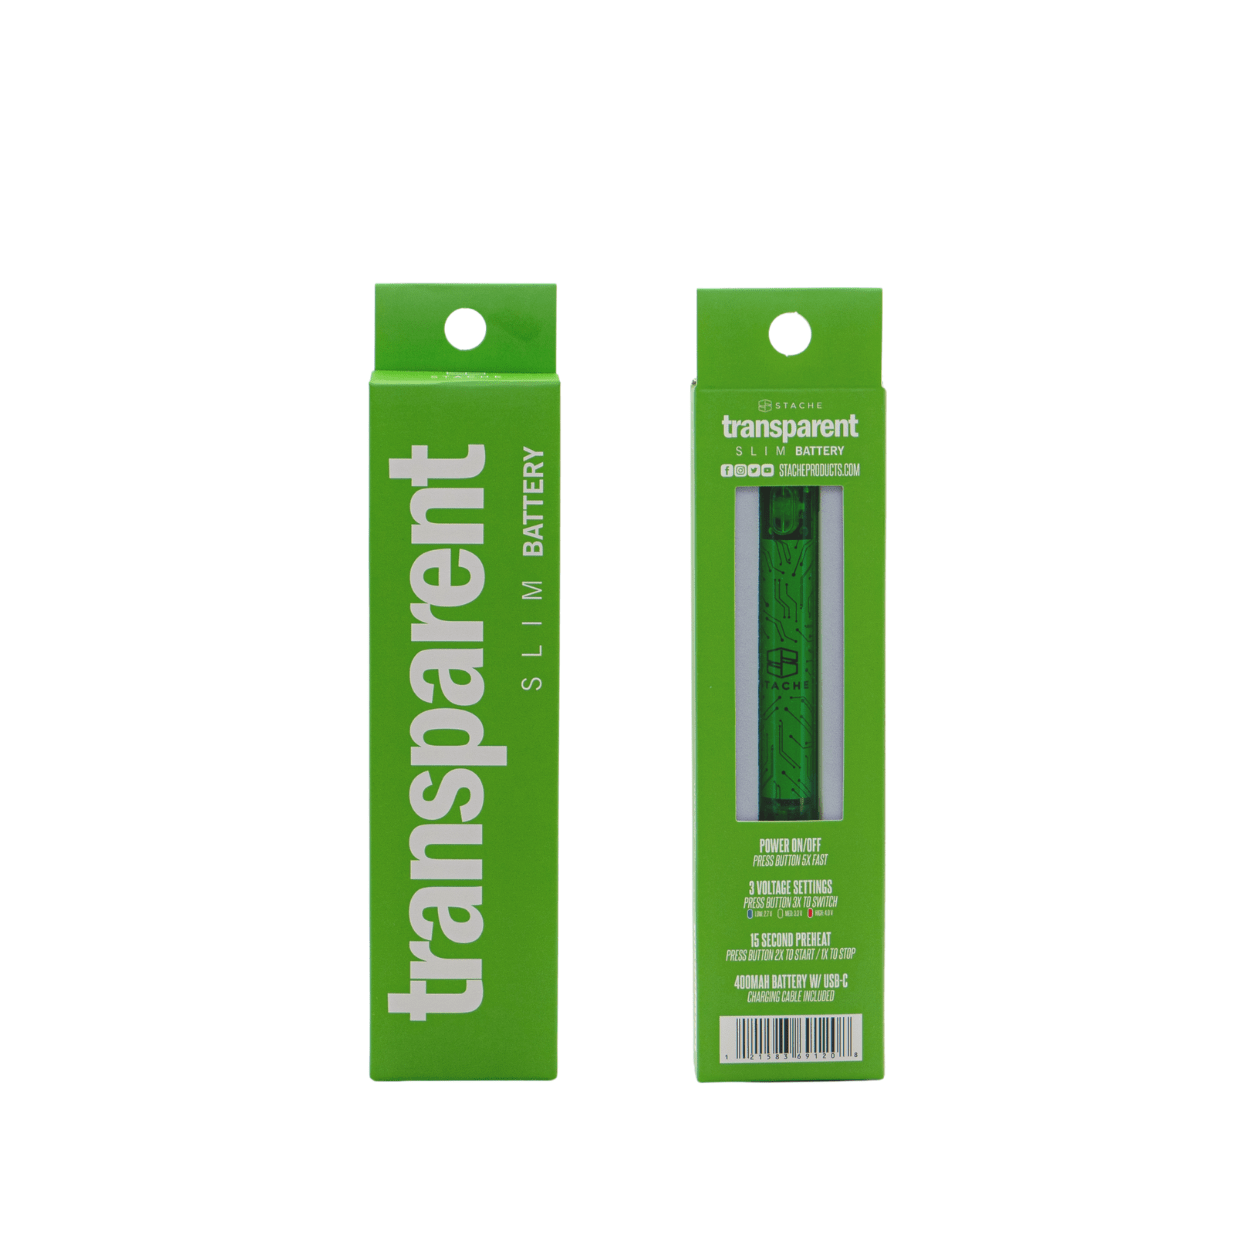 Stache Vaporizer Green Transparent battery